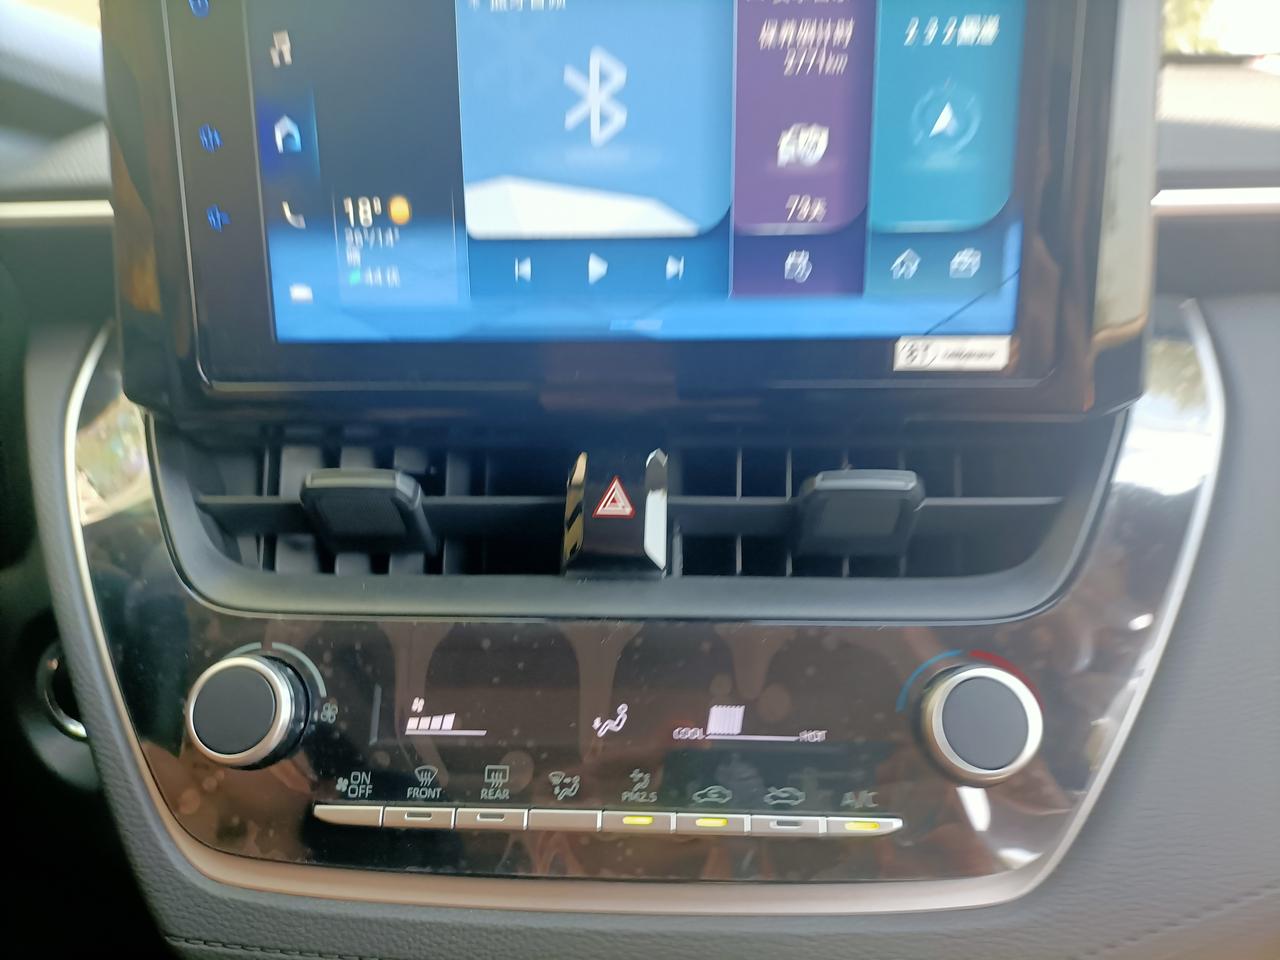 丰田卡罗拉锐放 锐放精英款中控台空调右边的旋转按钮是做什么用的